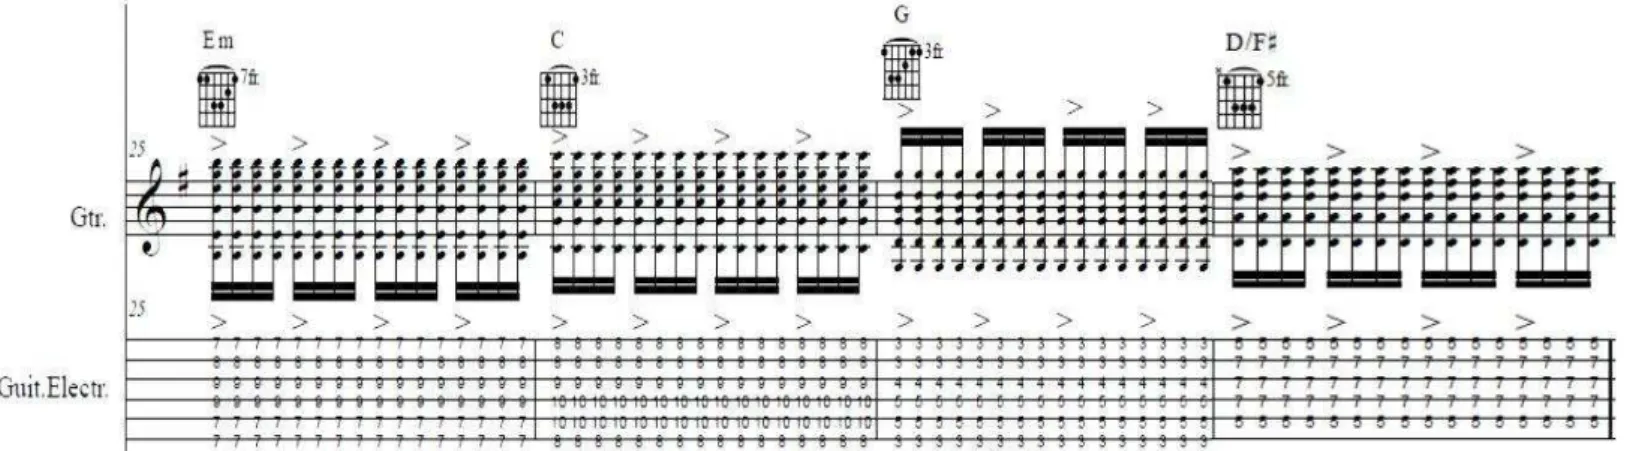 Figura 11 - Criação musical harmónica/rítmica (guitarra elétrica)  “Bate a luz no cimo”